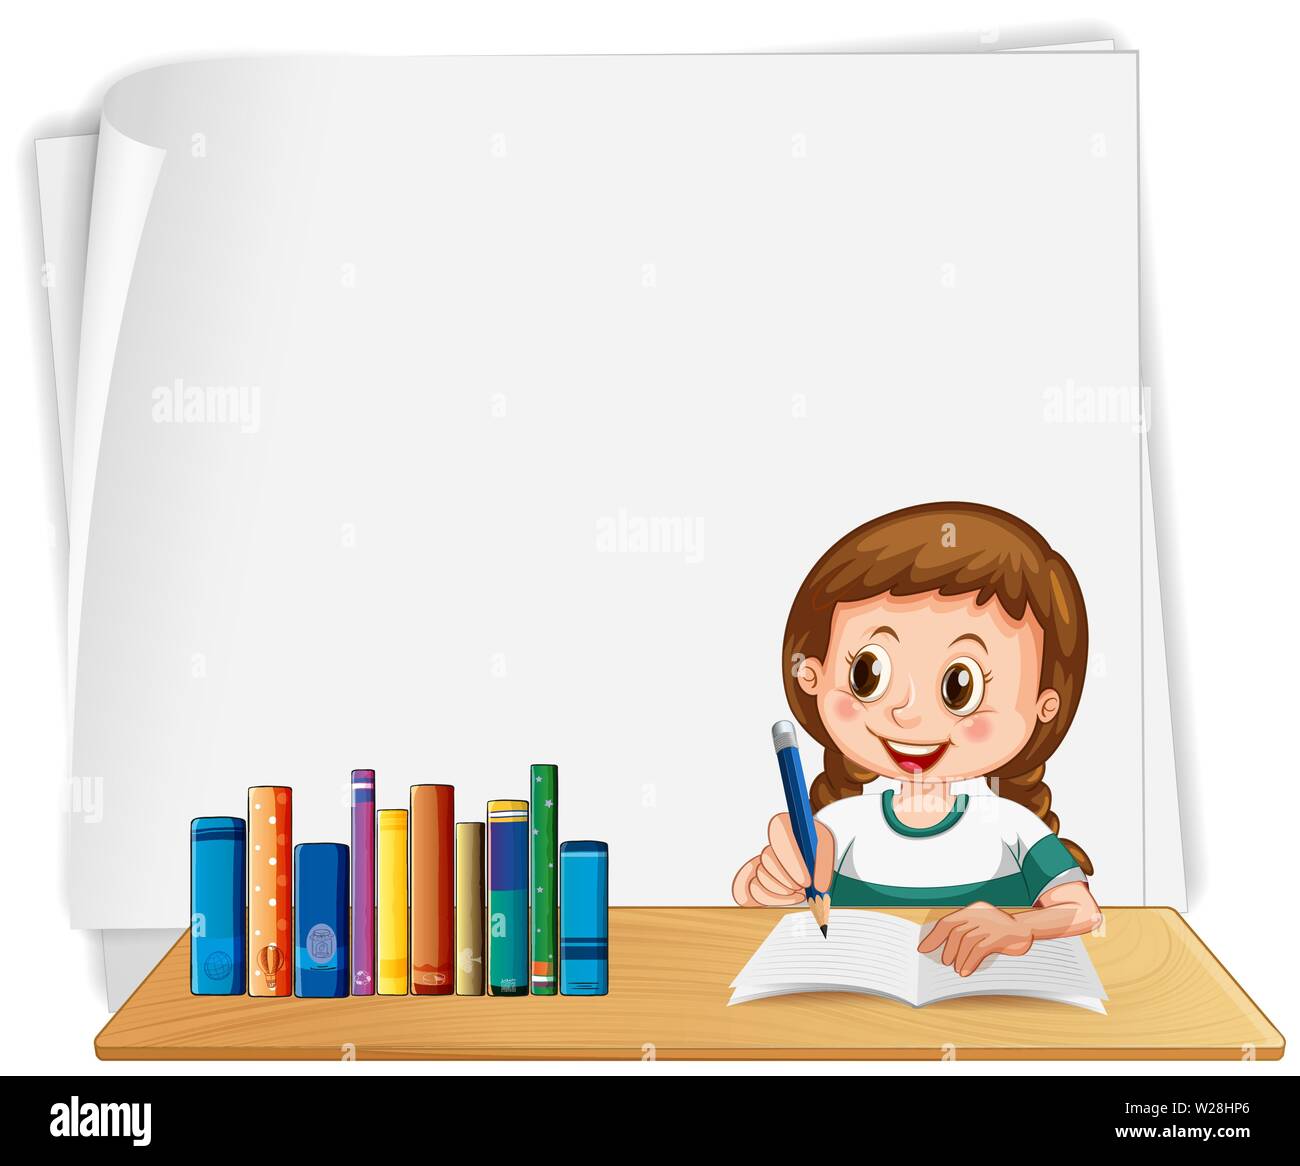 Girl school blank frame illustration Stock Vector